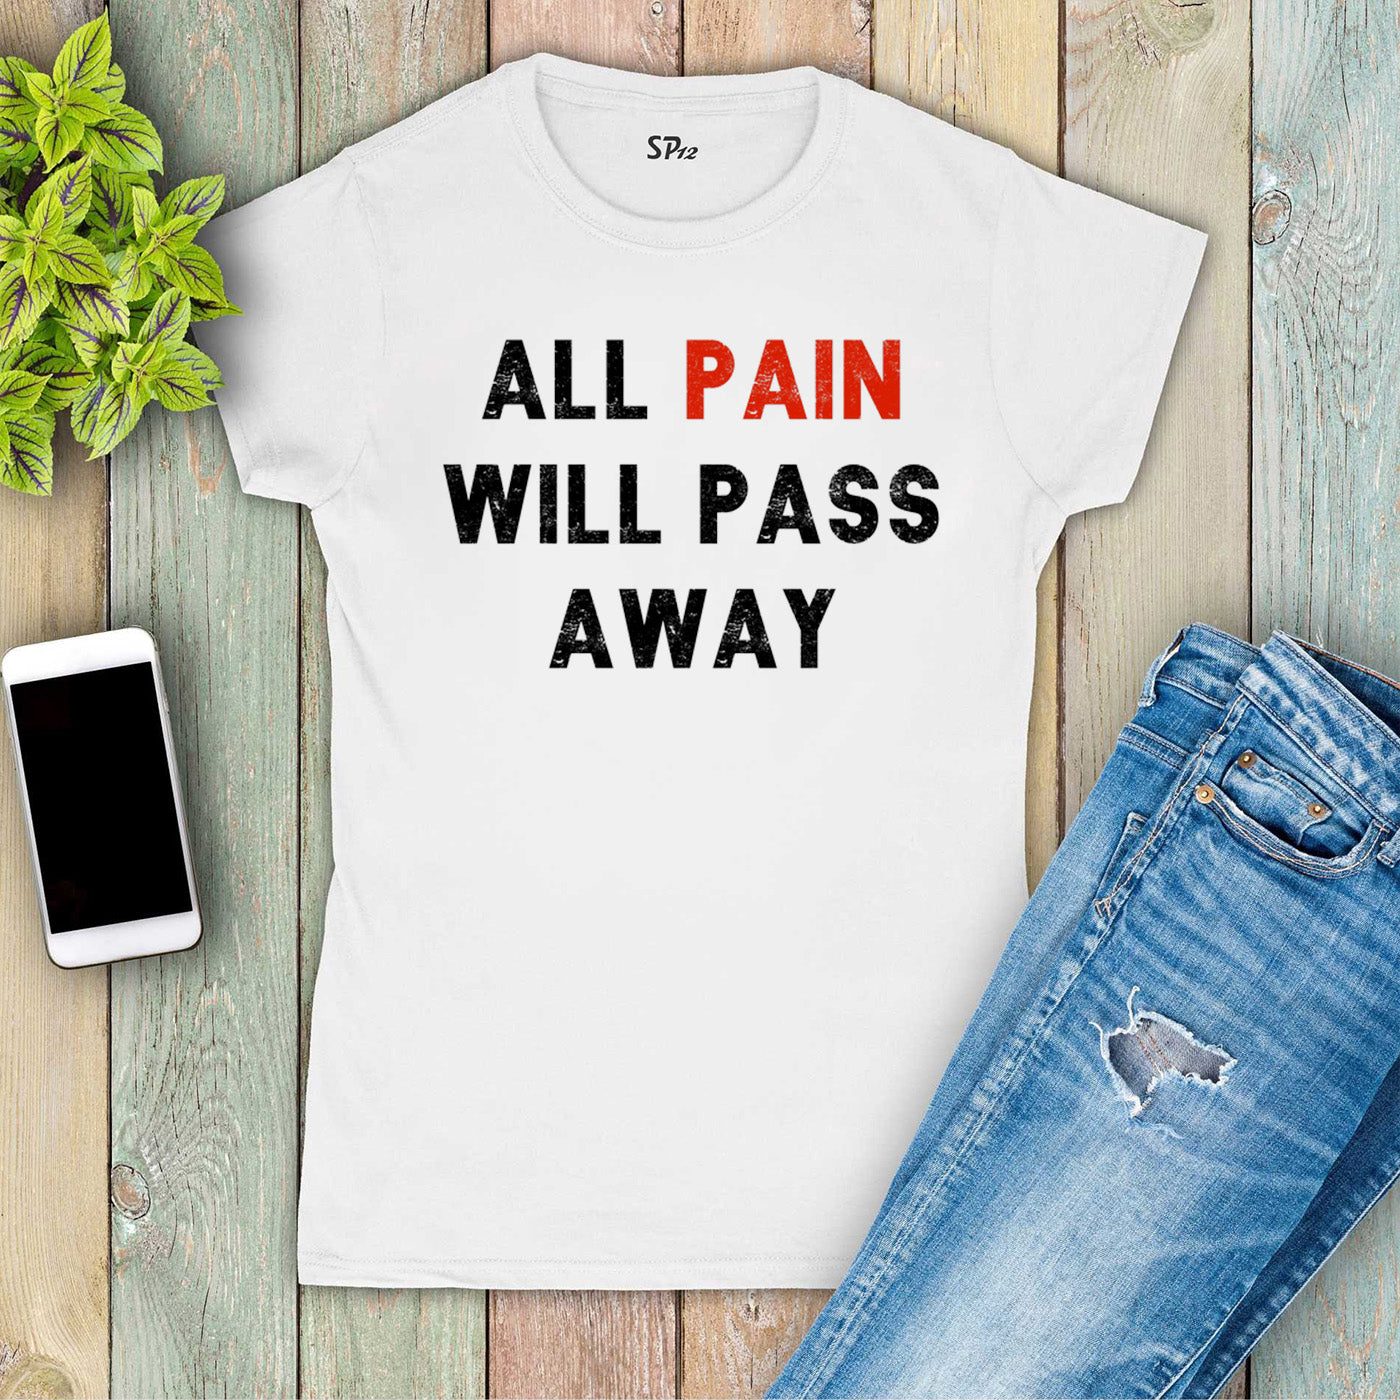 All Pain Will Pass Away Motivational Slogan Women T Shirt